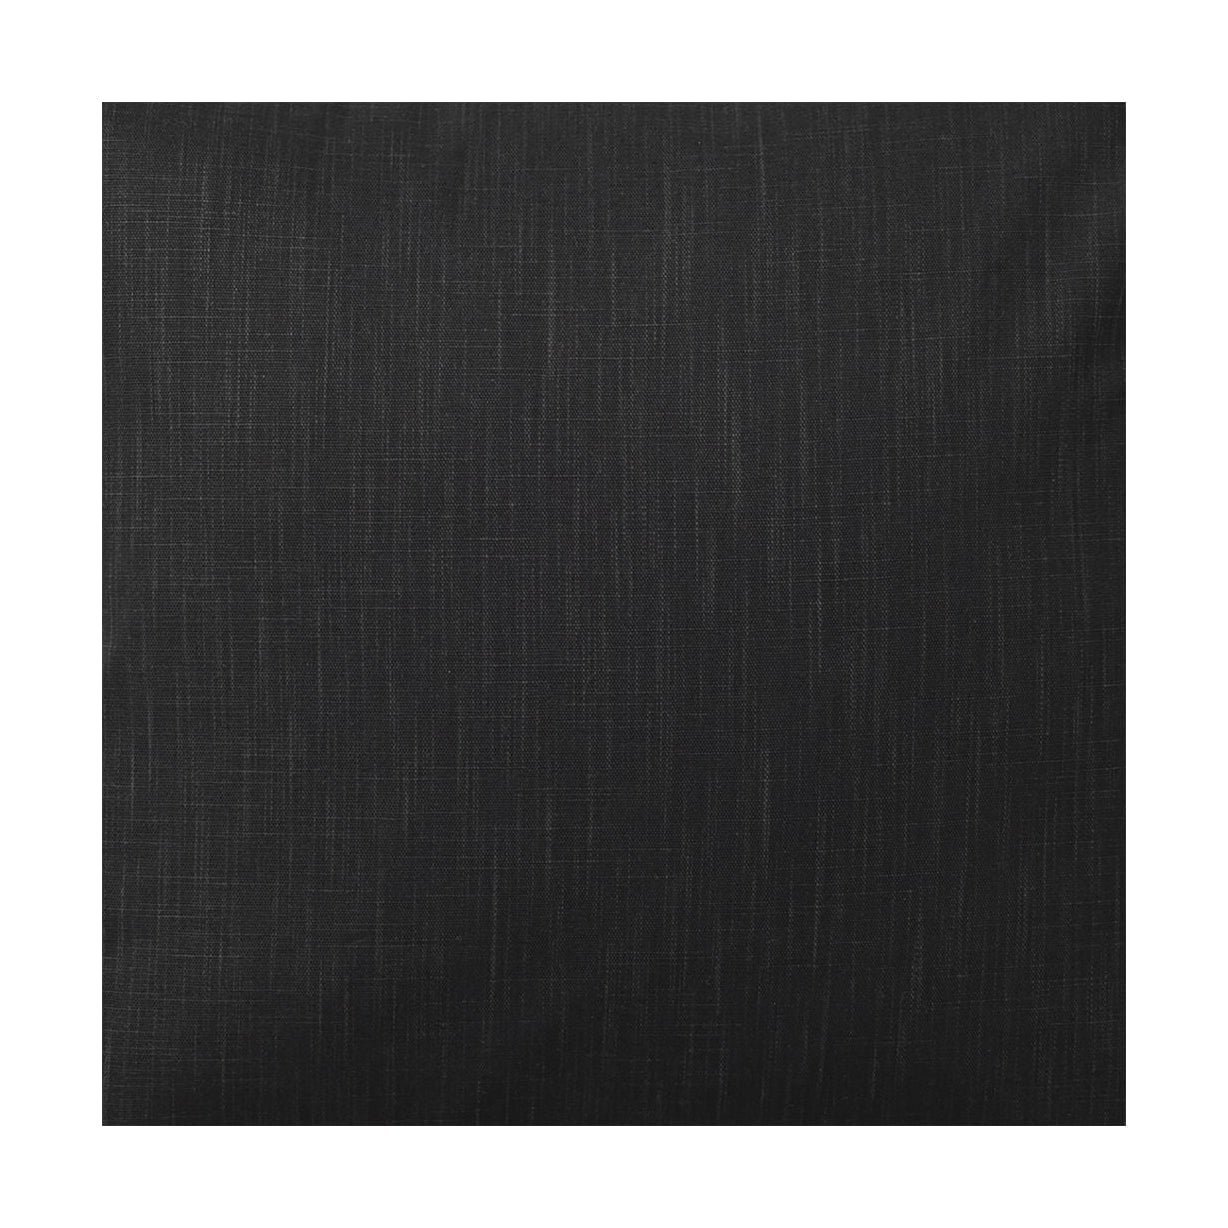 Spira Klotz Fabric Ancho 150 cm (precio por metro), Asphalt